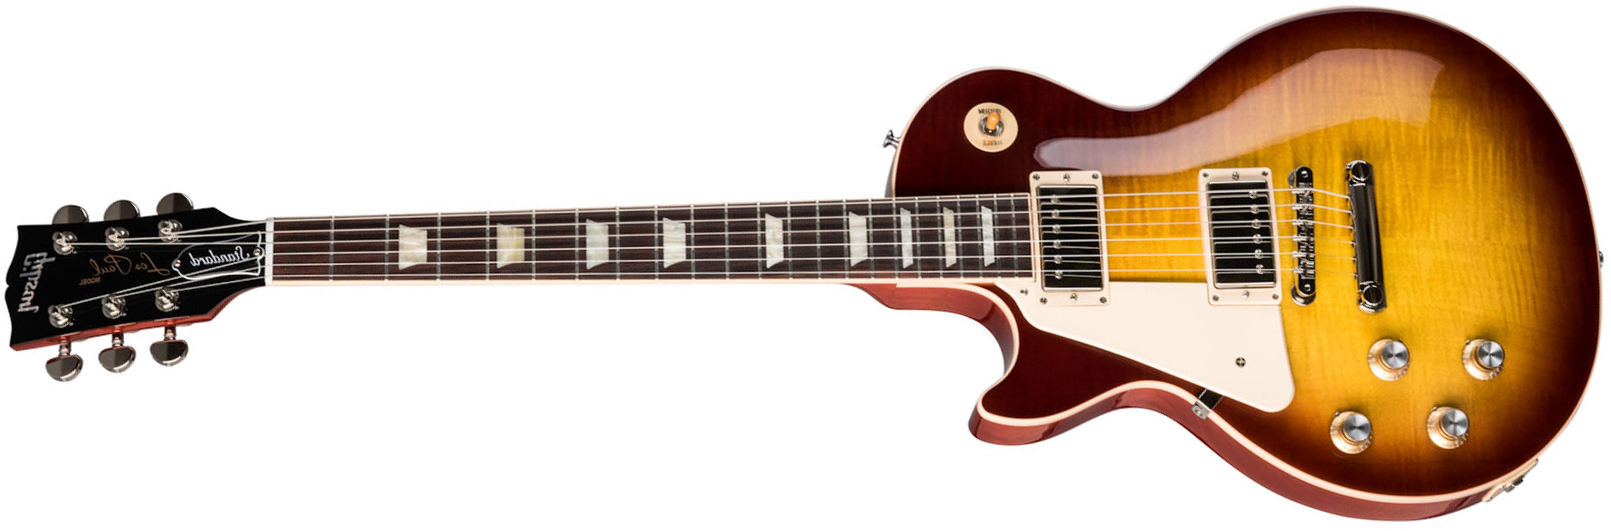 Gibson Les Paul Standard 60s Lh Gaucher 2h Ht Rw - Iced Tea - Guitarra electrica para zurdos - Main picture